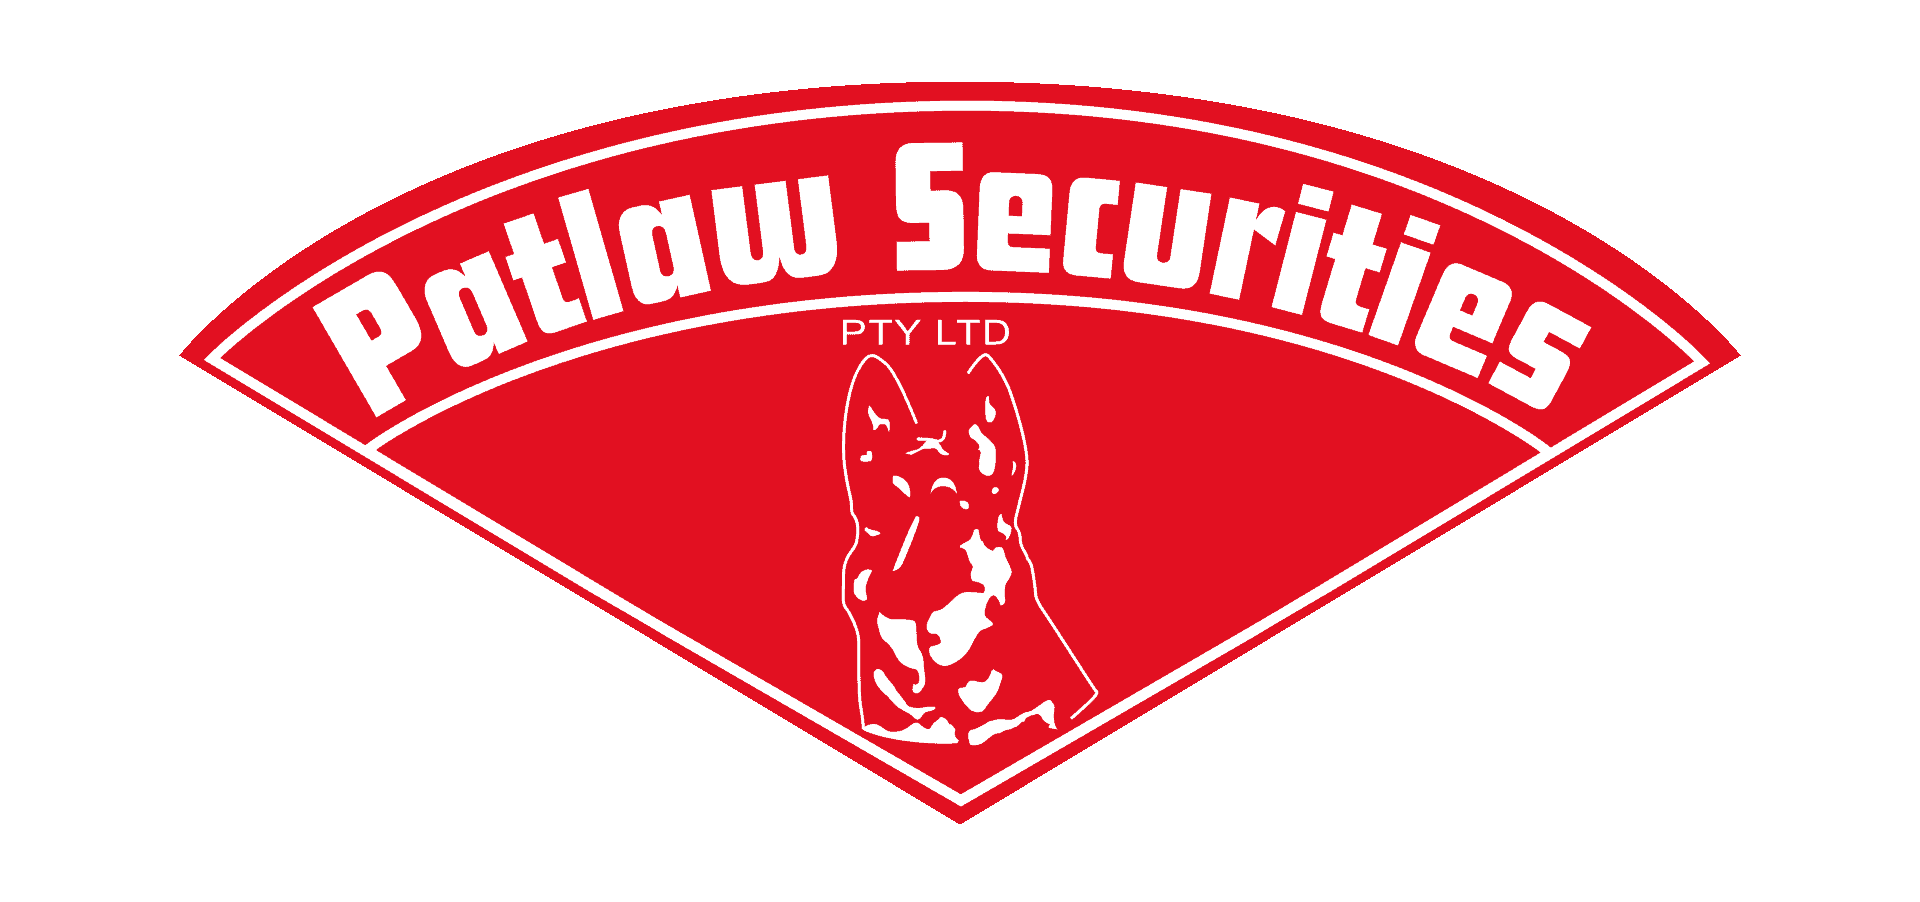 Patlaw Securities Pty Ltd. Icon